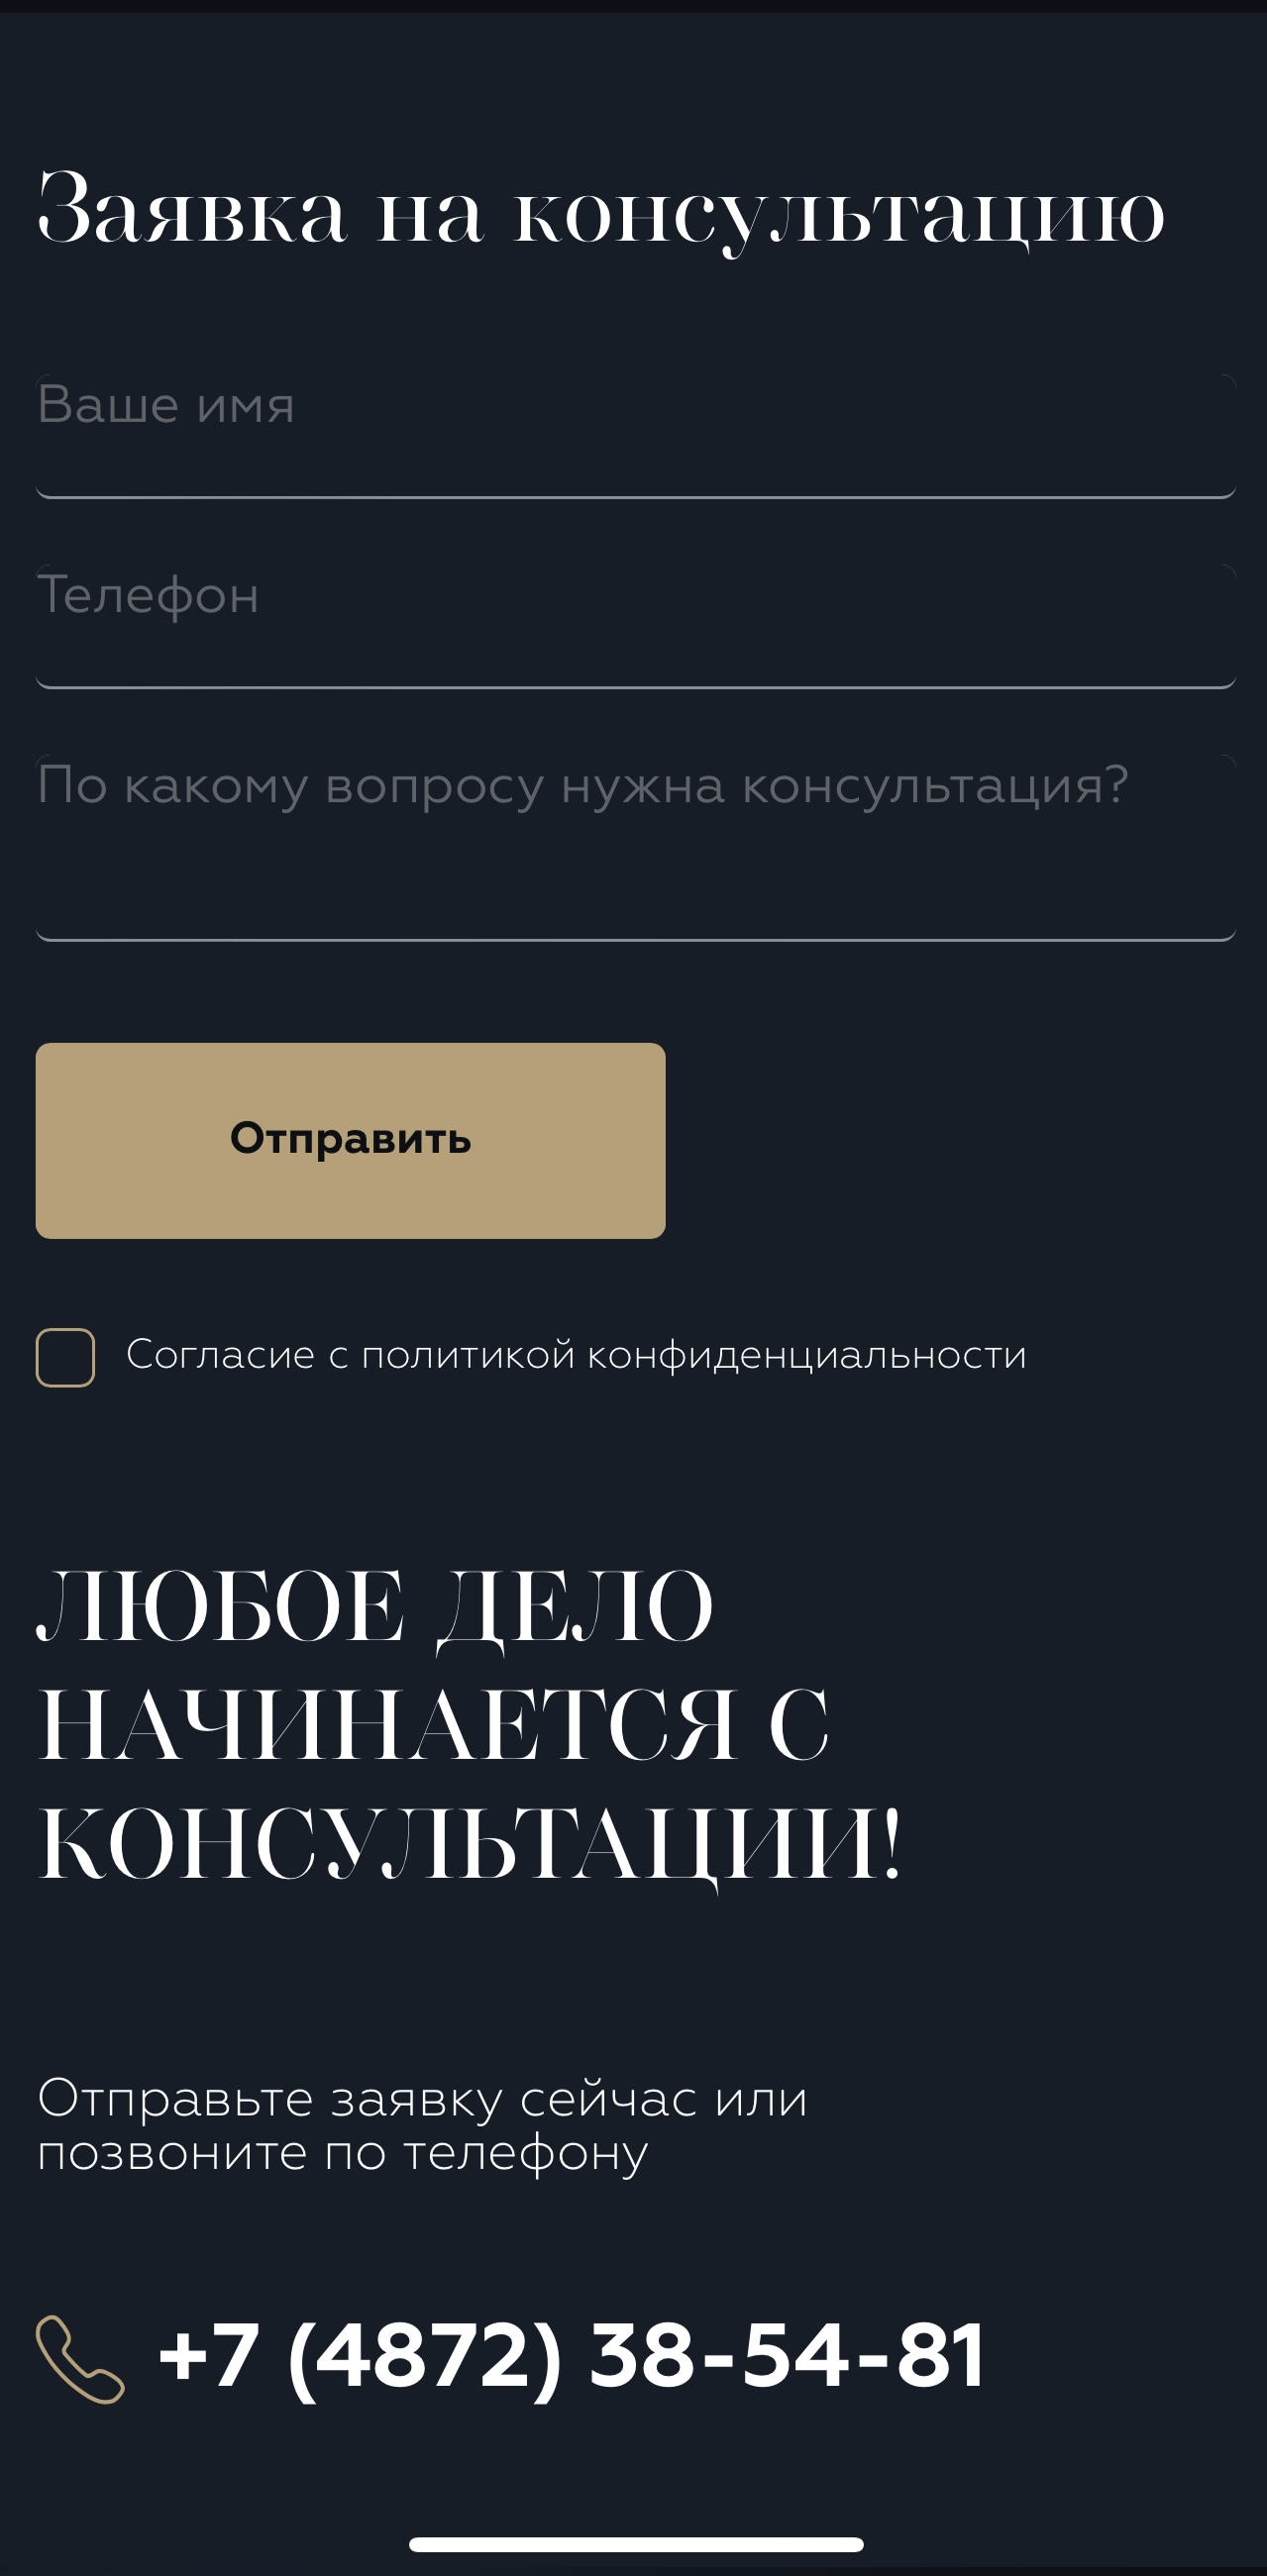 rim-pravo.ru / Форма заявки на консультацию